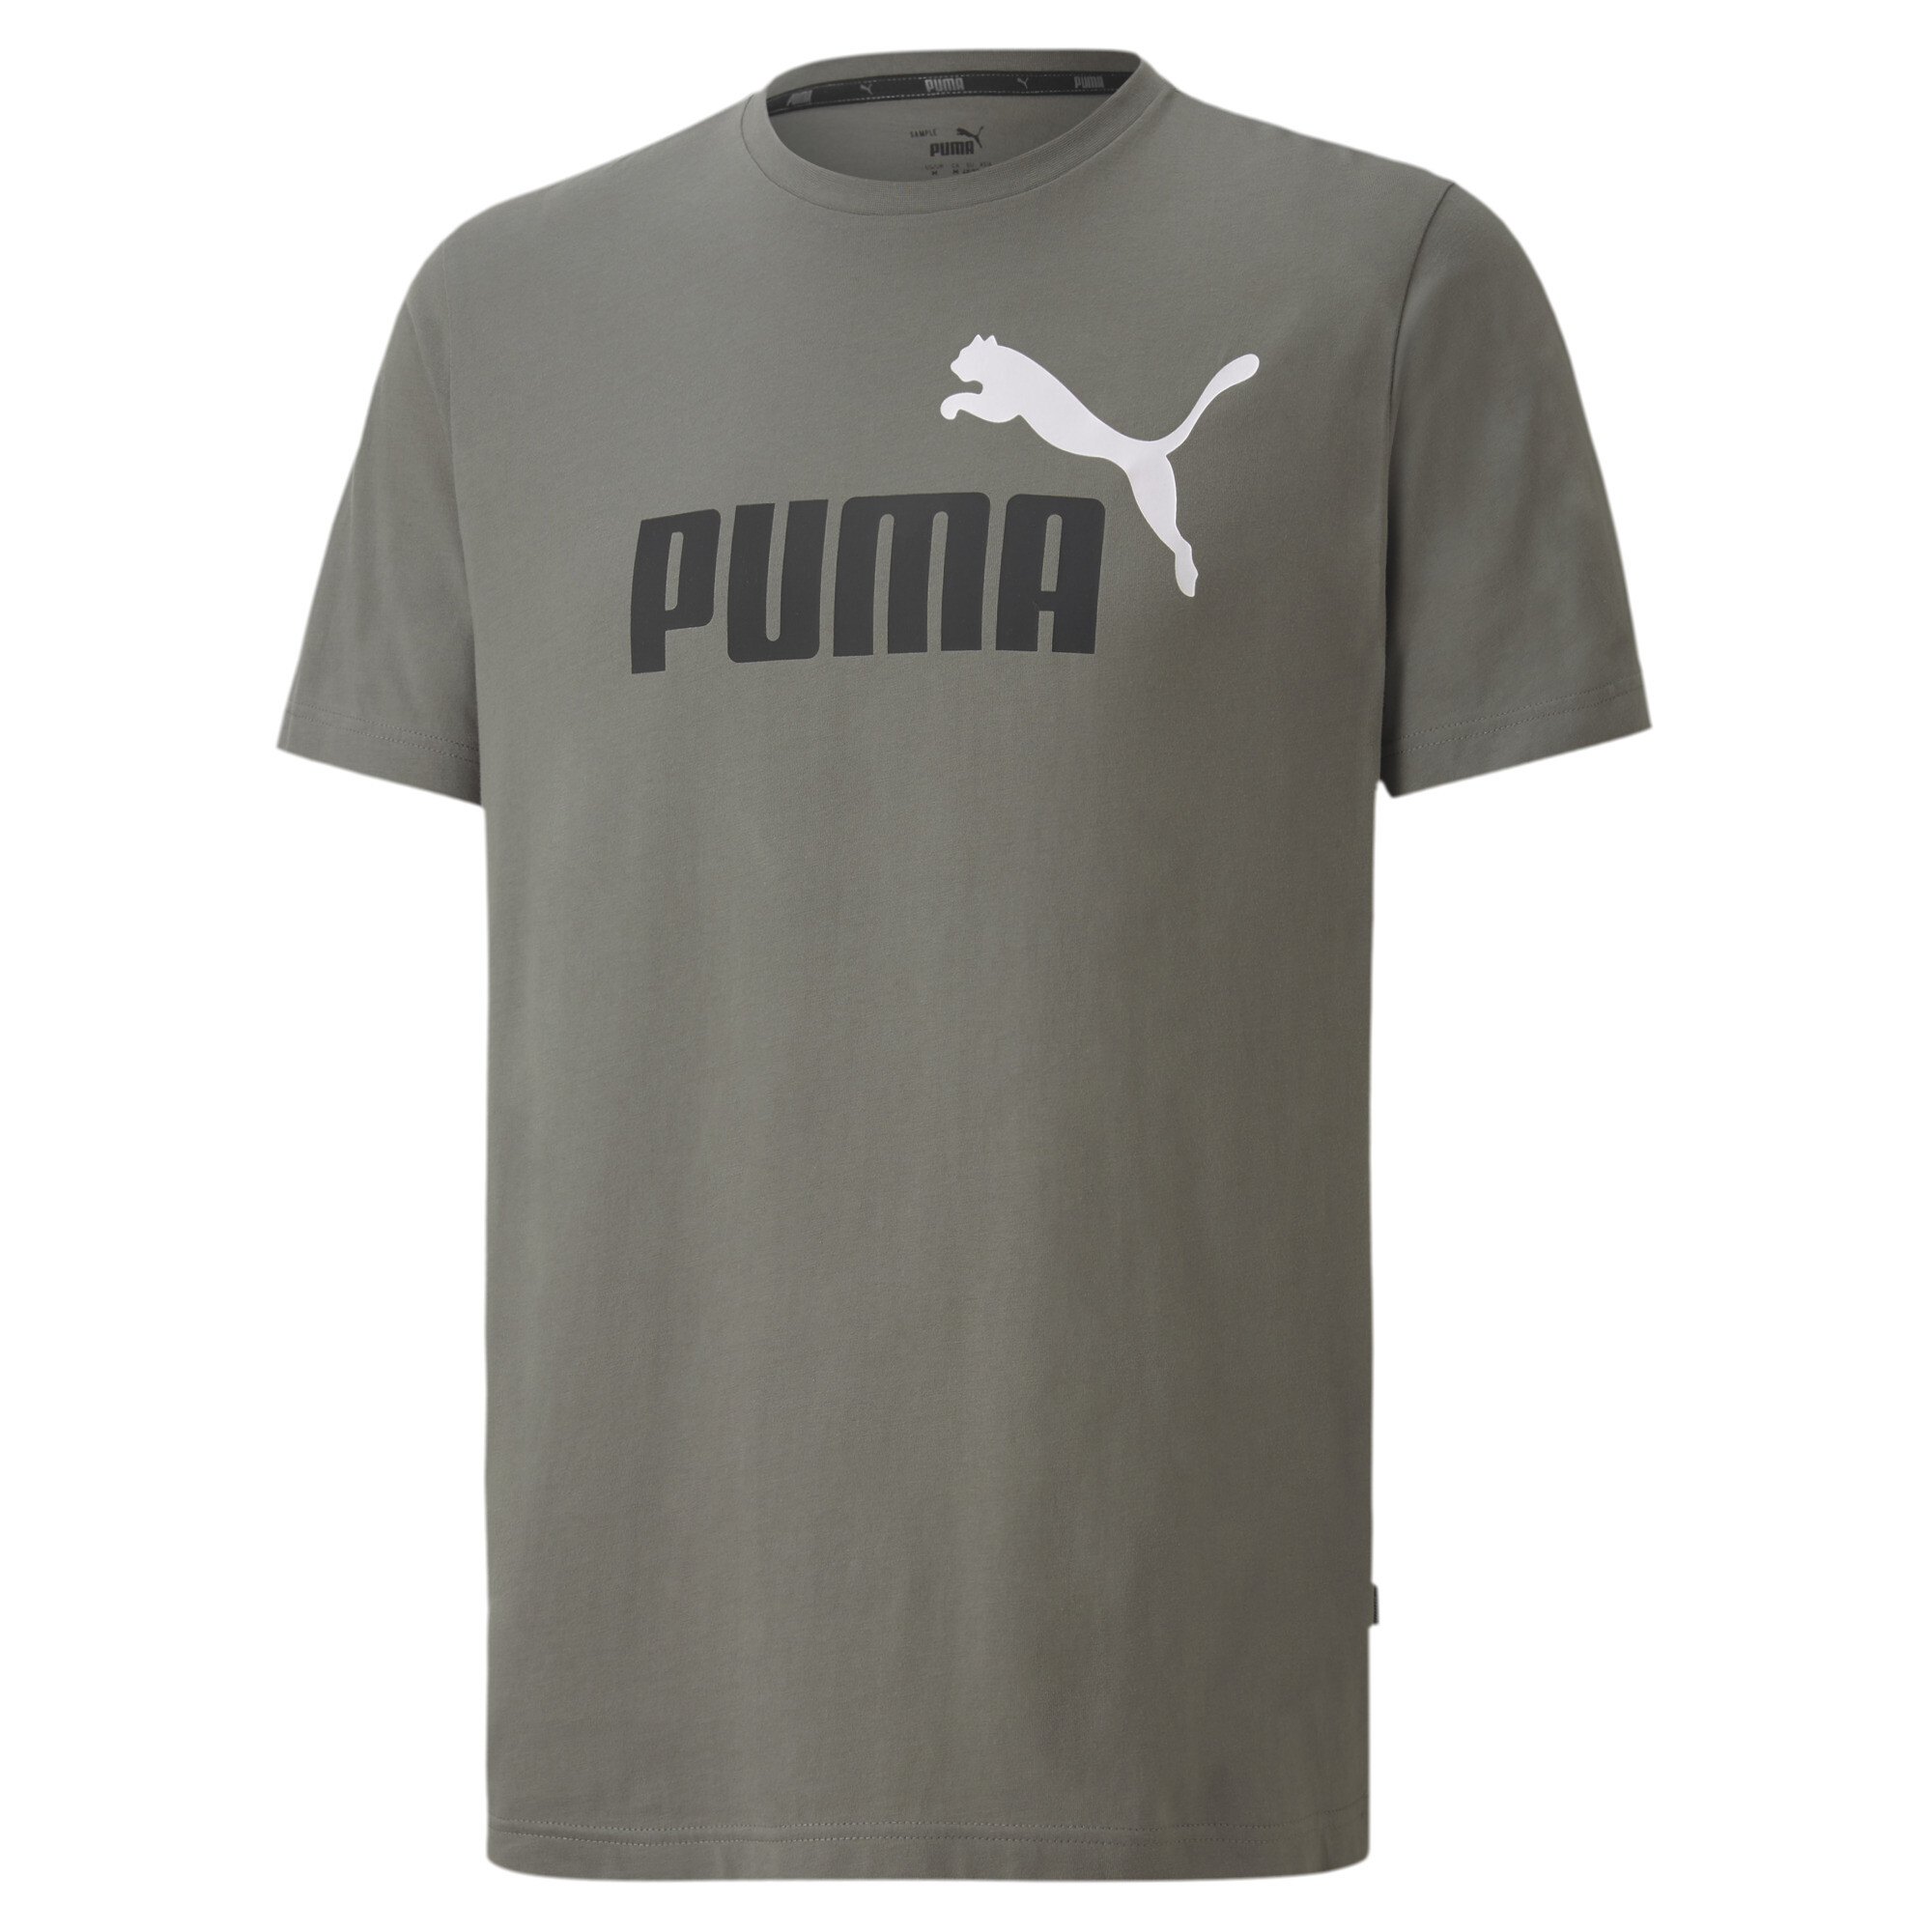 puma clothing nz